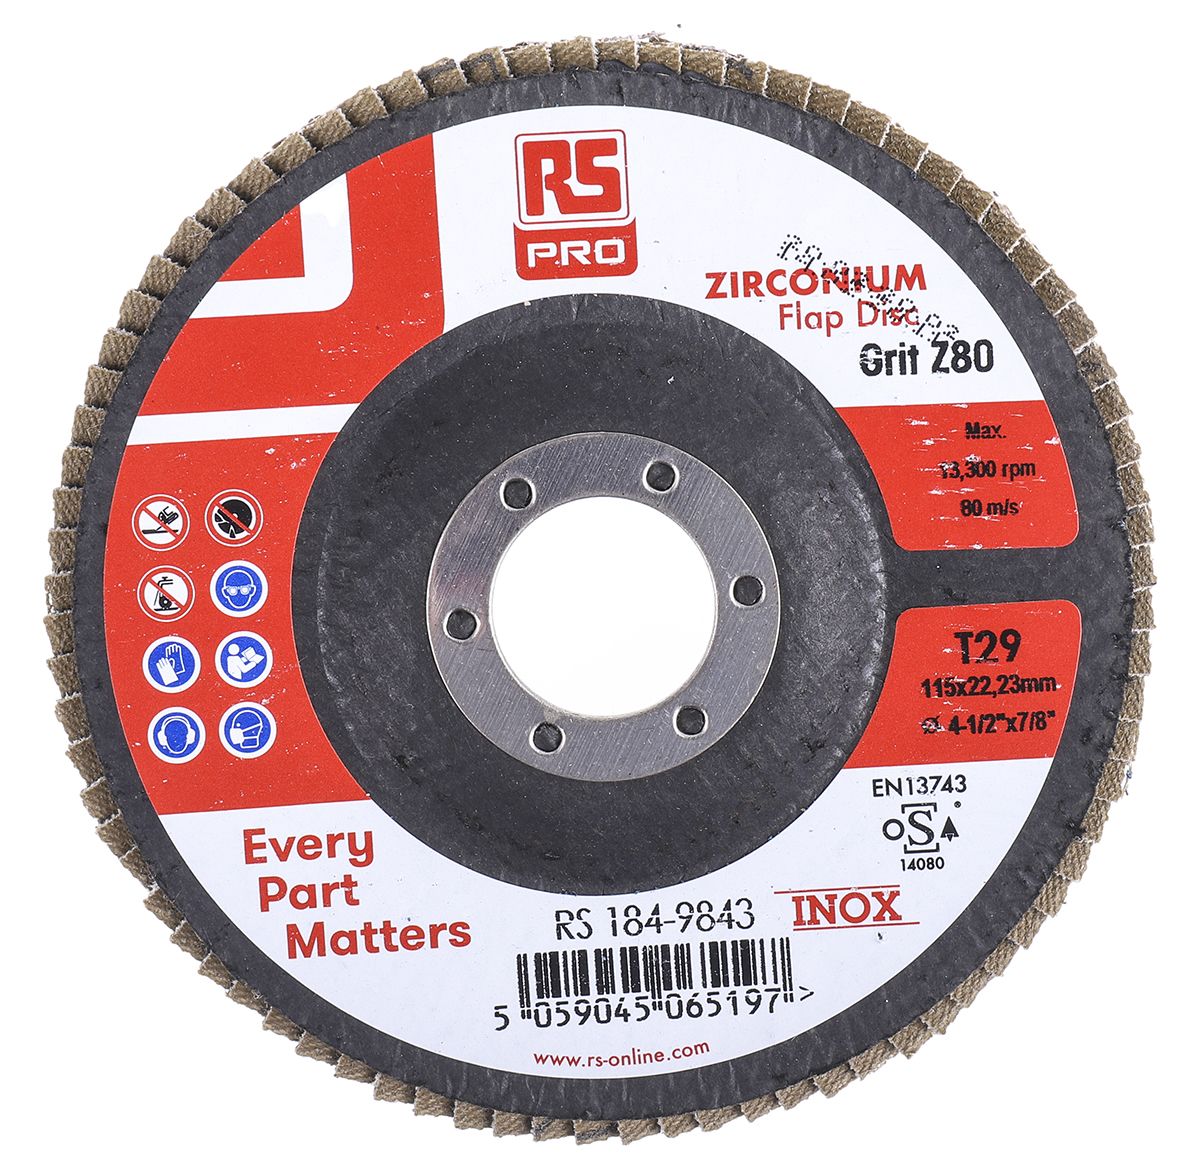 RS PRO Zirconium Dioxide Flap Disc, 115mm, P80 Grit